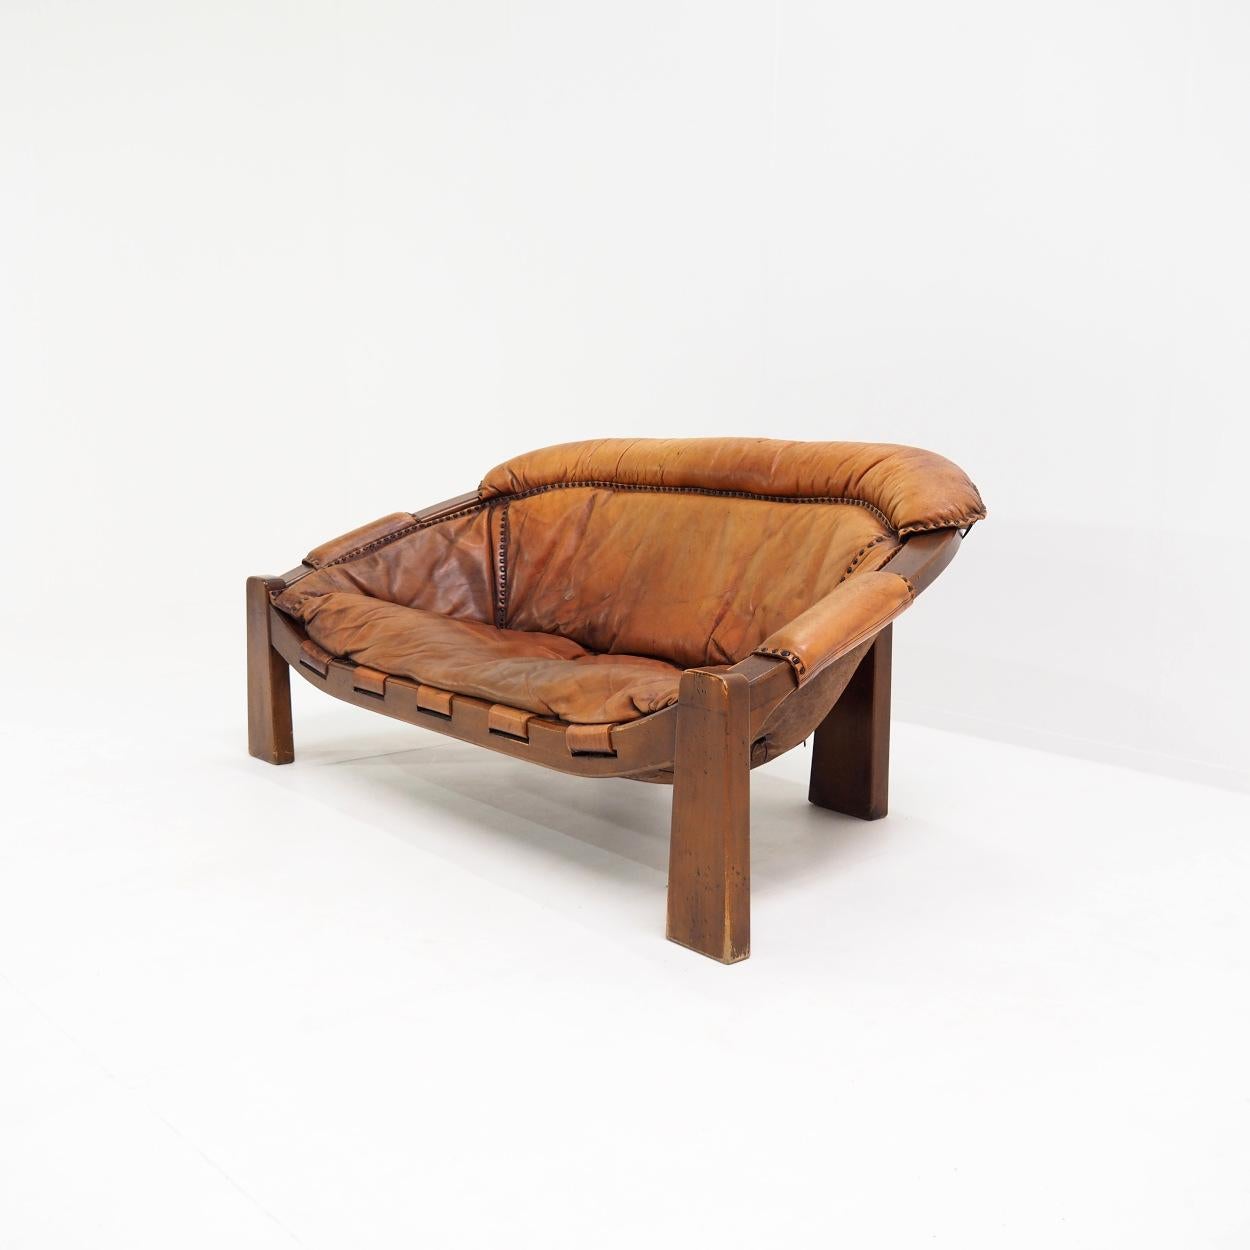 Magnifique canapé deux places dans le style brutaliste brésilien des années 1970.

Le canapé a été conçu par le designer italien Luciano Frigerio et fabriqué et assemblé dans son studio.

Le siège présente un cuir patiné d'une incroyable beauté avec